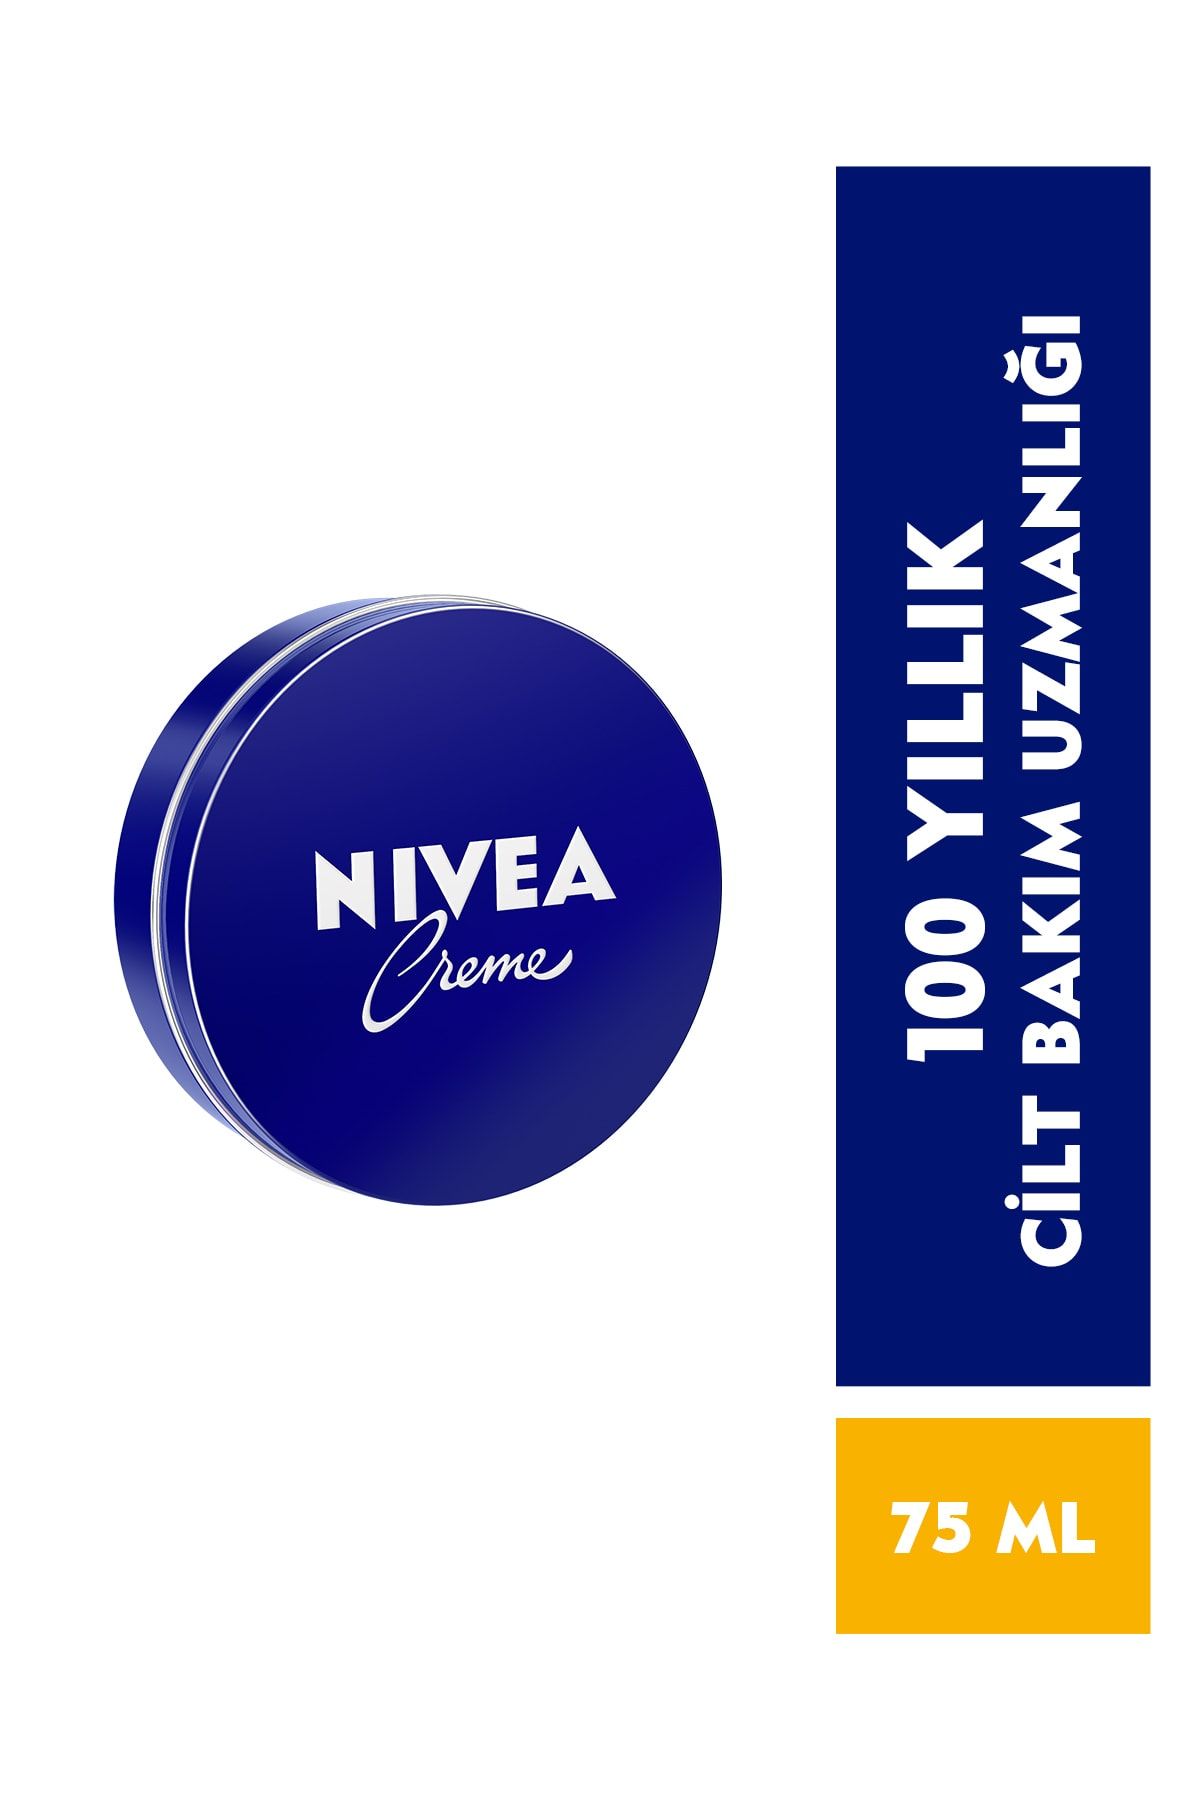 NIVEA Creme 75ml, Bakım Yapan Koruma, Uzun Süreli Yoğun Nemlendirici, El Yüz ve Vücut